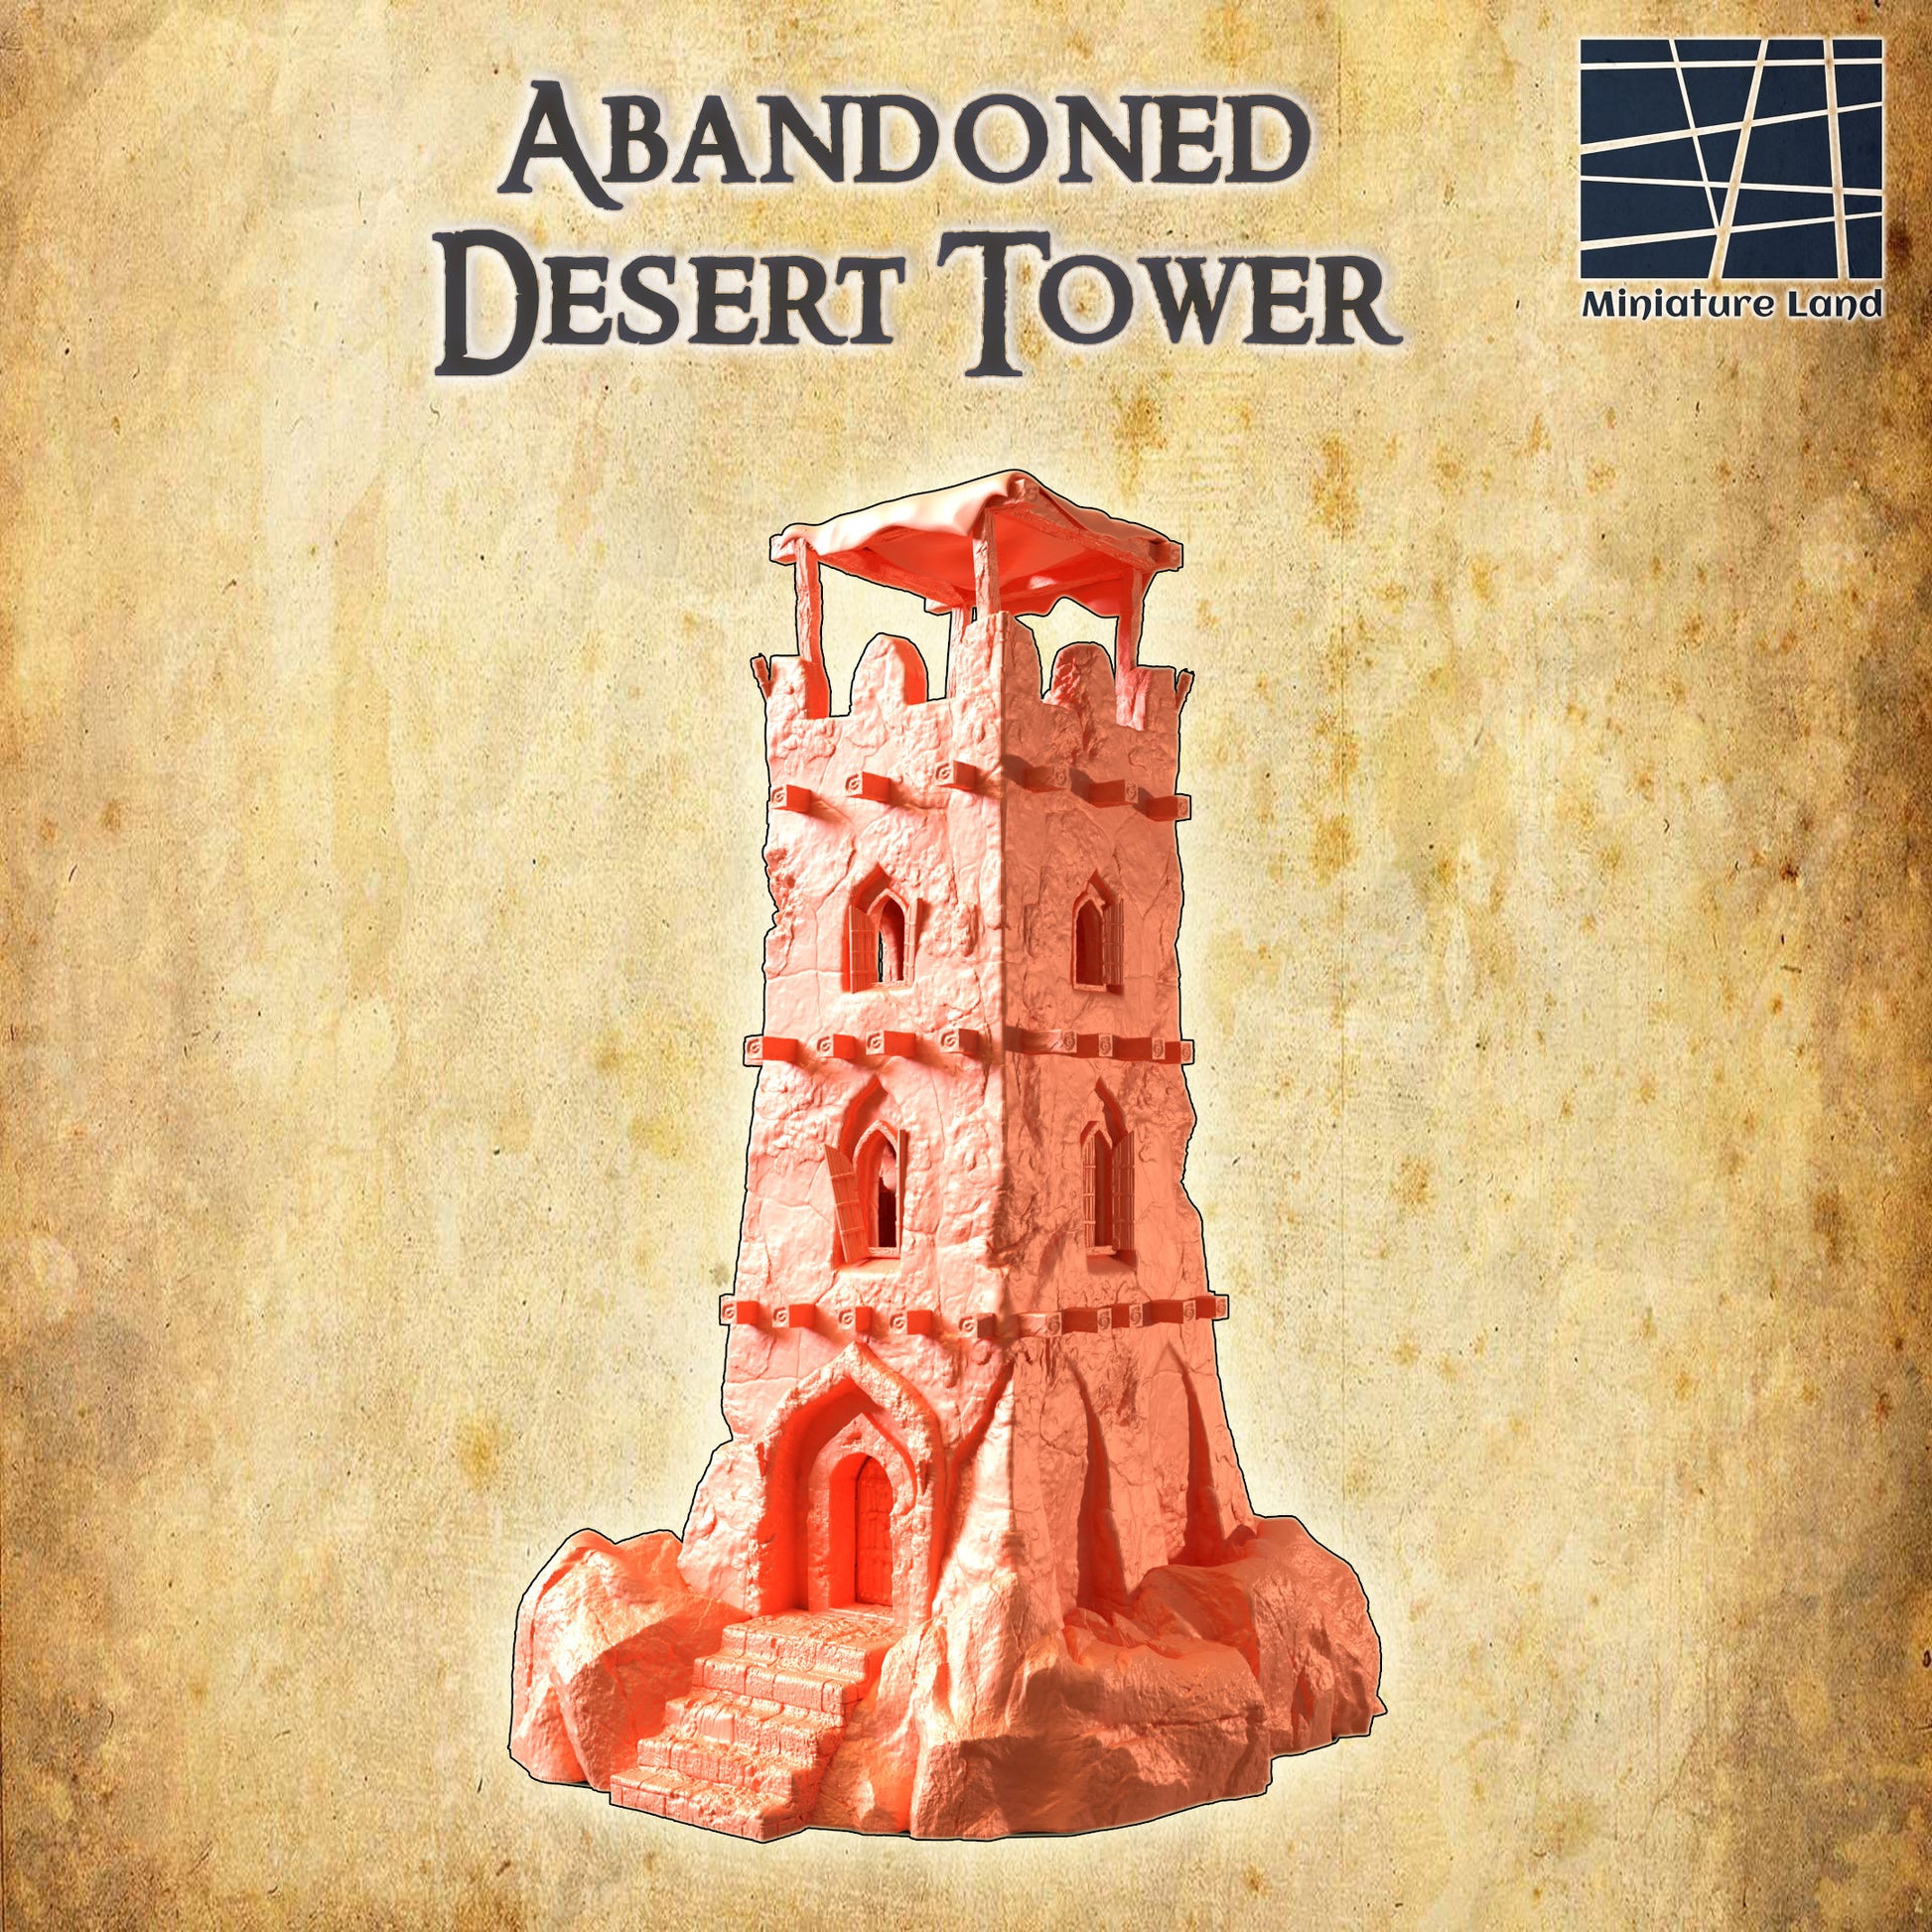 Desert Tower Ruin, Abandoned Desert Tower, 28mm, DnD Terrain